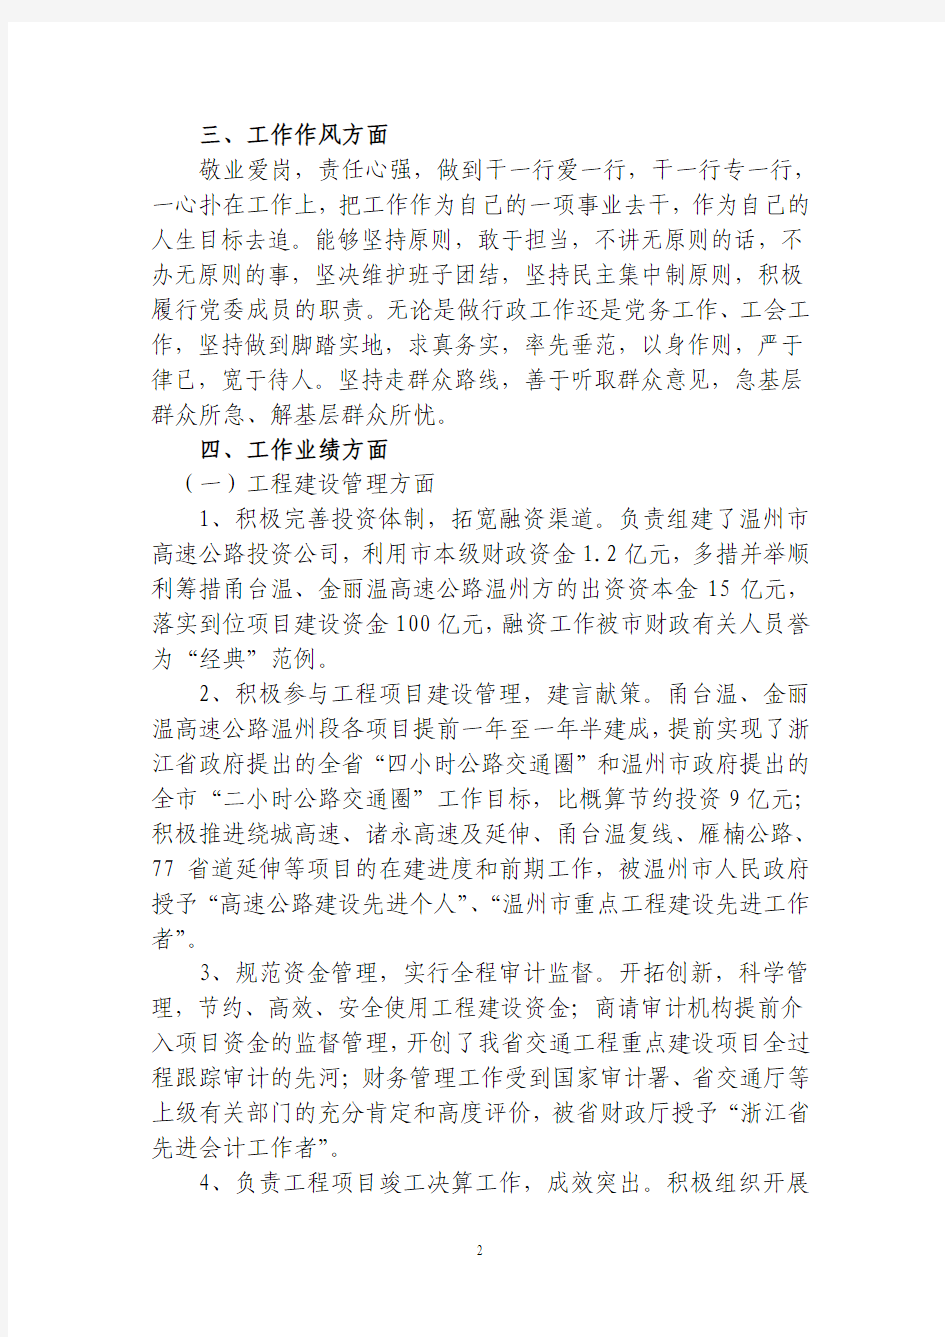 杨长中同志近三年工作业绩公示